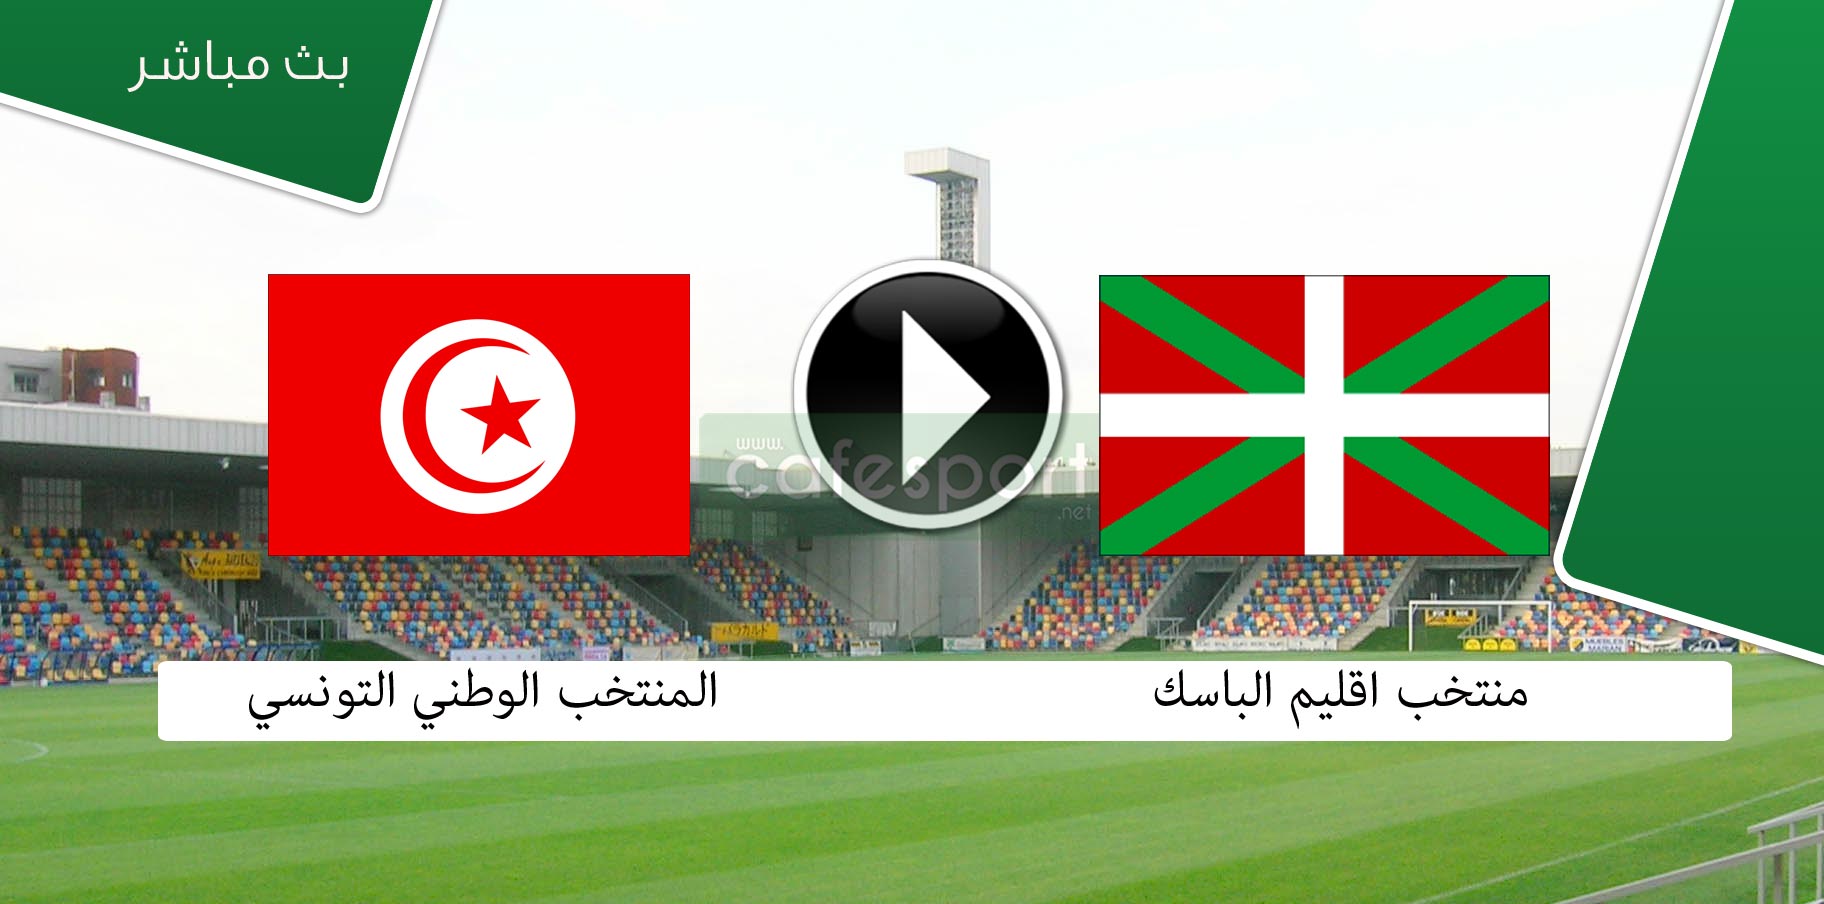 بث مباشر لمباراة المنتخب الوطني التونسي أمام نضيره منتخب اقليم الباسك